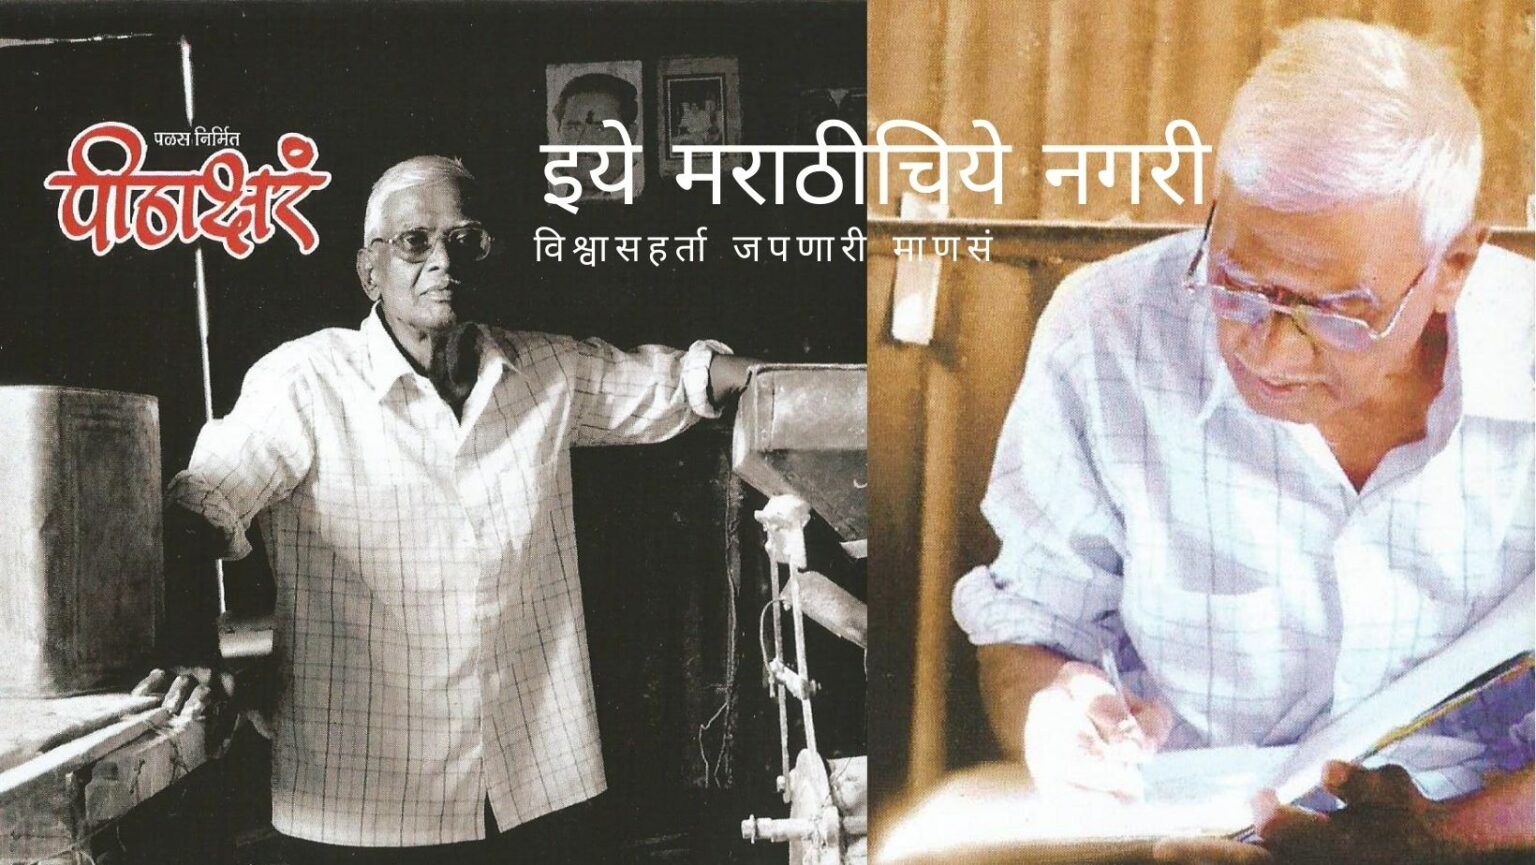 Pithakshr Documentary on Marathi writer Mahadev More